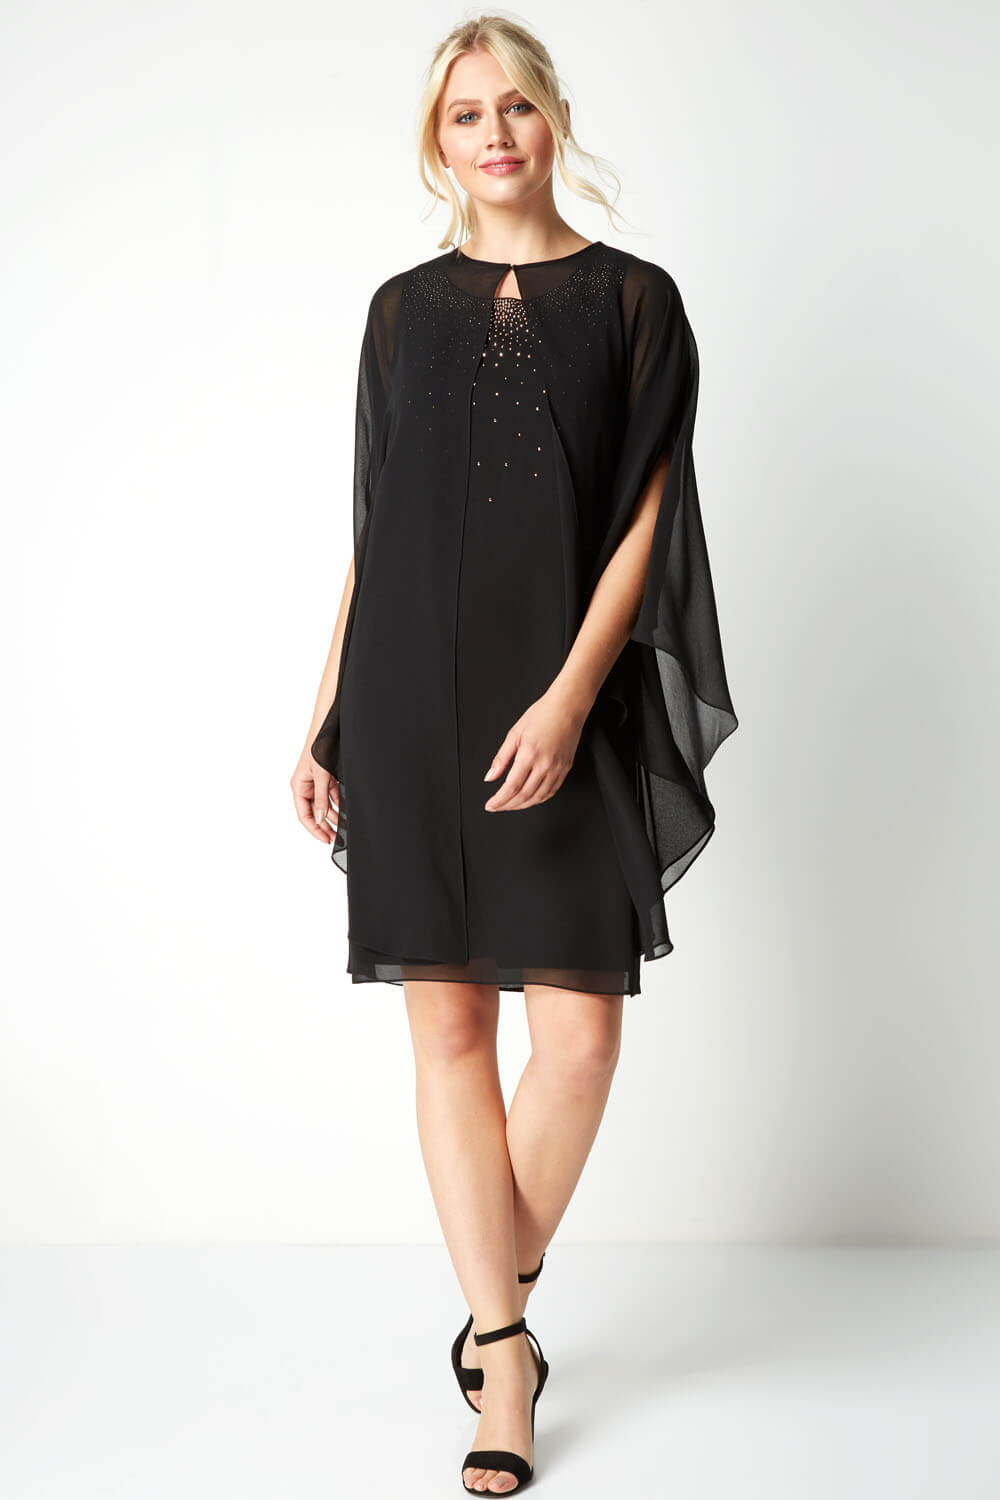 Black Embellished Swing Dress, Image 5 of 6